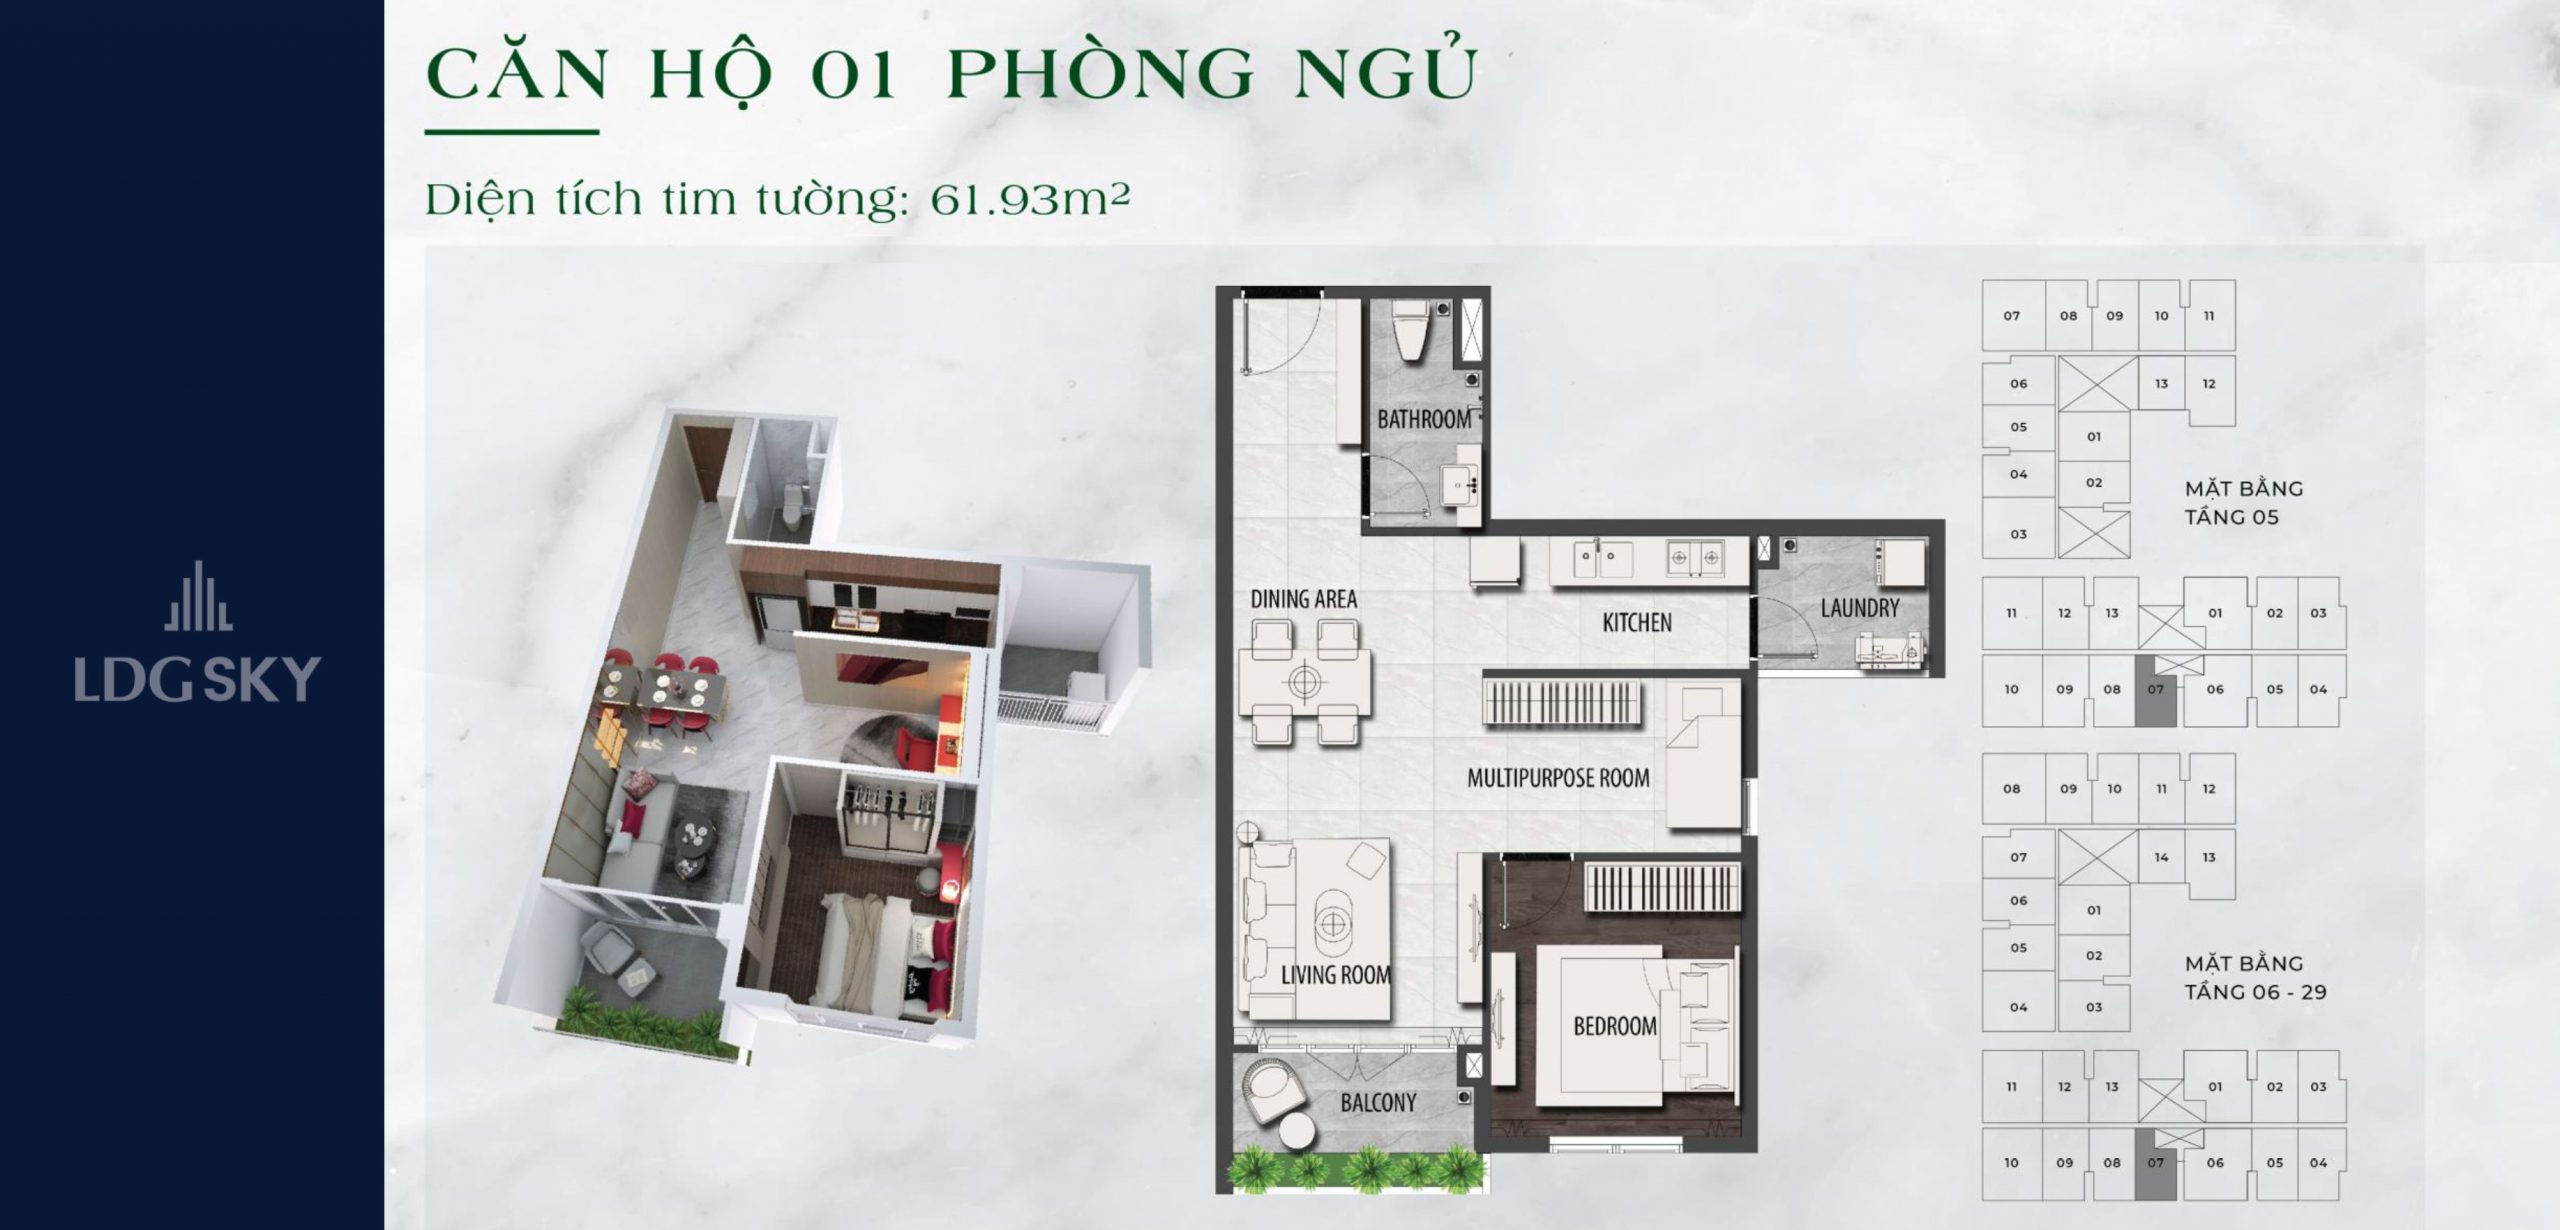 Thiết kế dự án căn hộ chung cư LDG Sky Bình Dương chủ đầu tư LDG Group